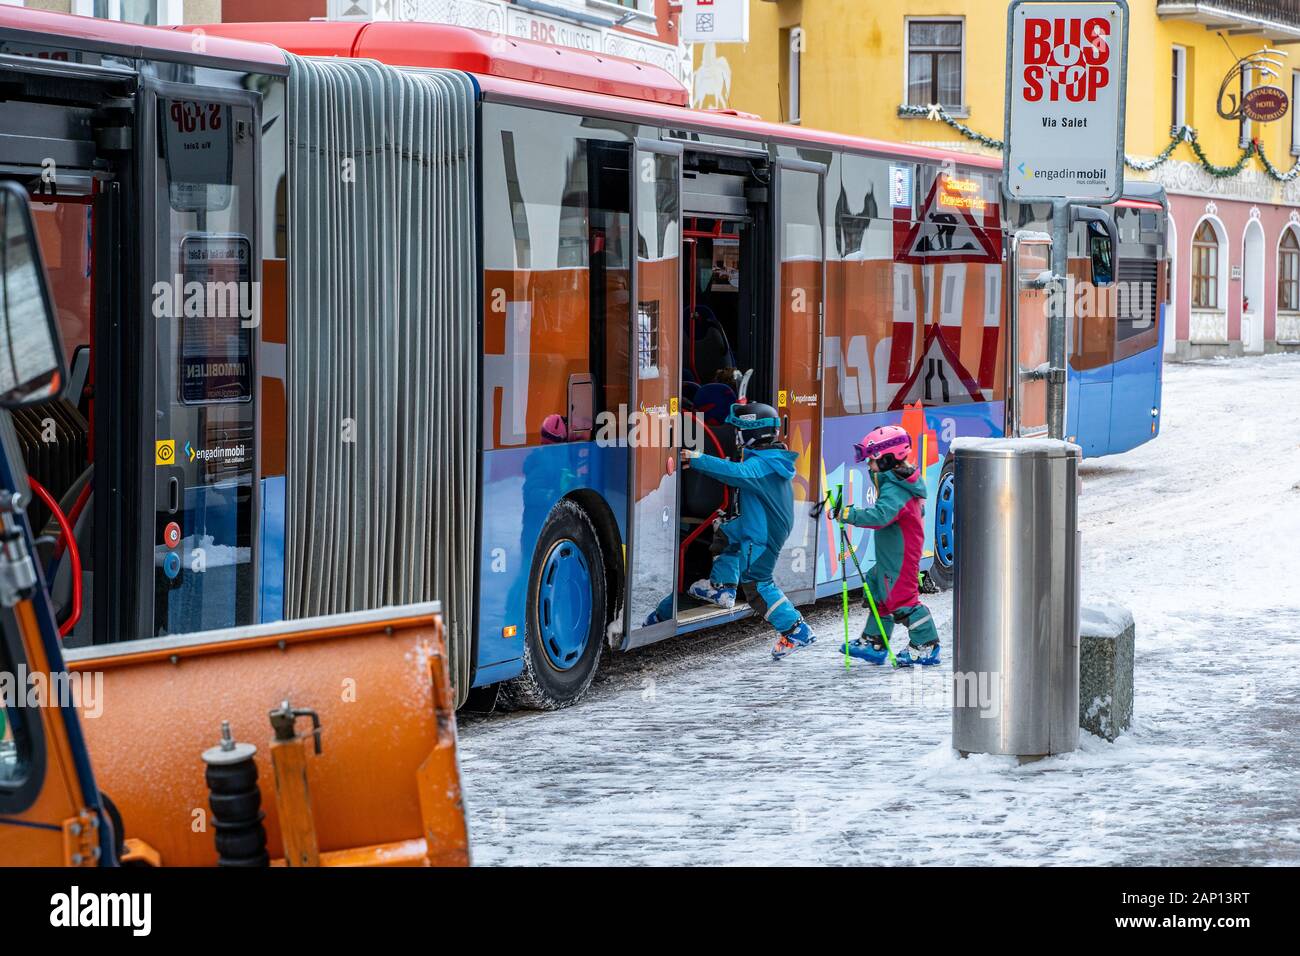 St. Moritz, Schweiz - 22. Dezember 2019 - Zwei junge Kinder Skifahrer in  ihrer Skibekleidung auf dem Bus Skifahren in St. Moritz, Schweiz auf Dec zu  gehen Stockfotografie - Alamy